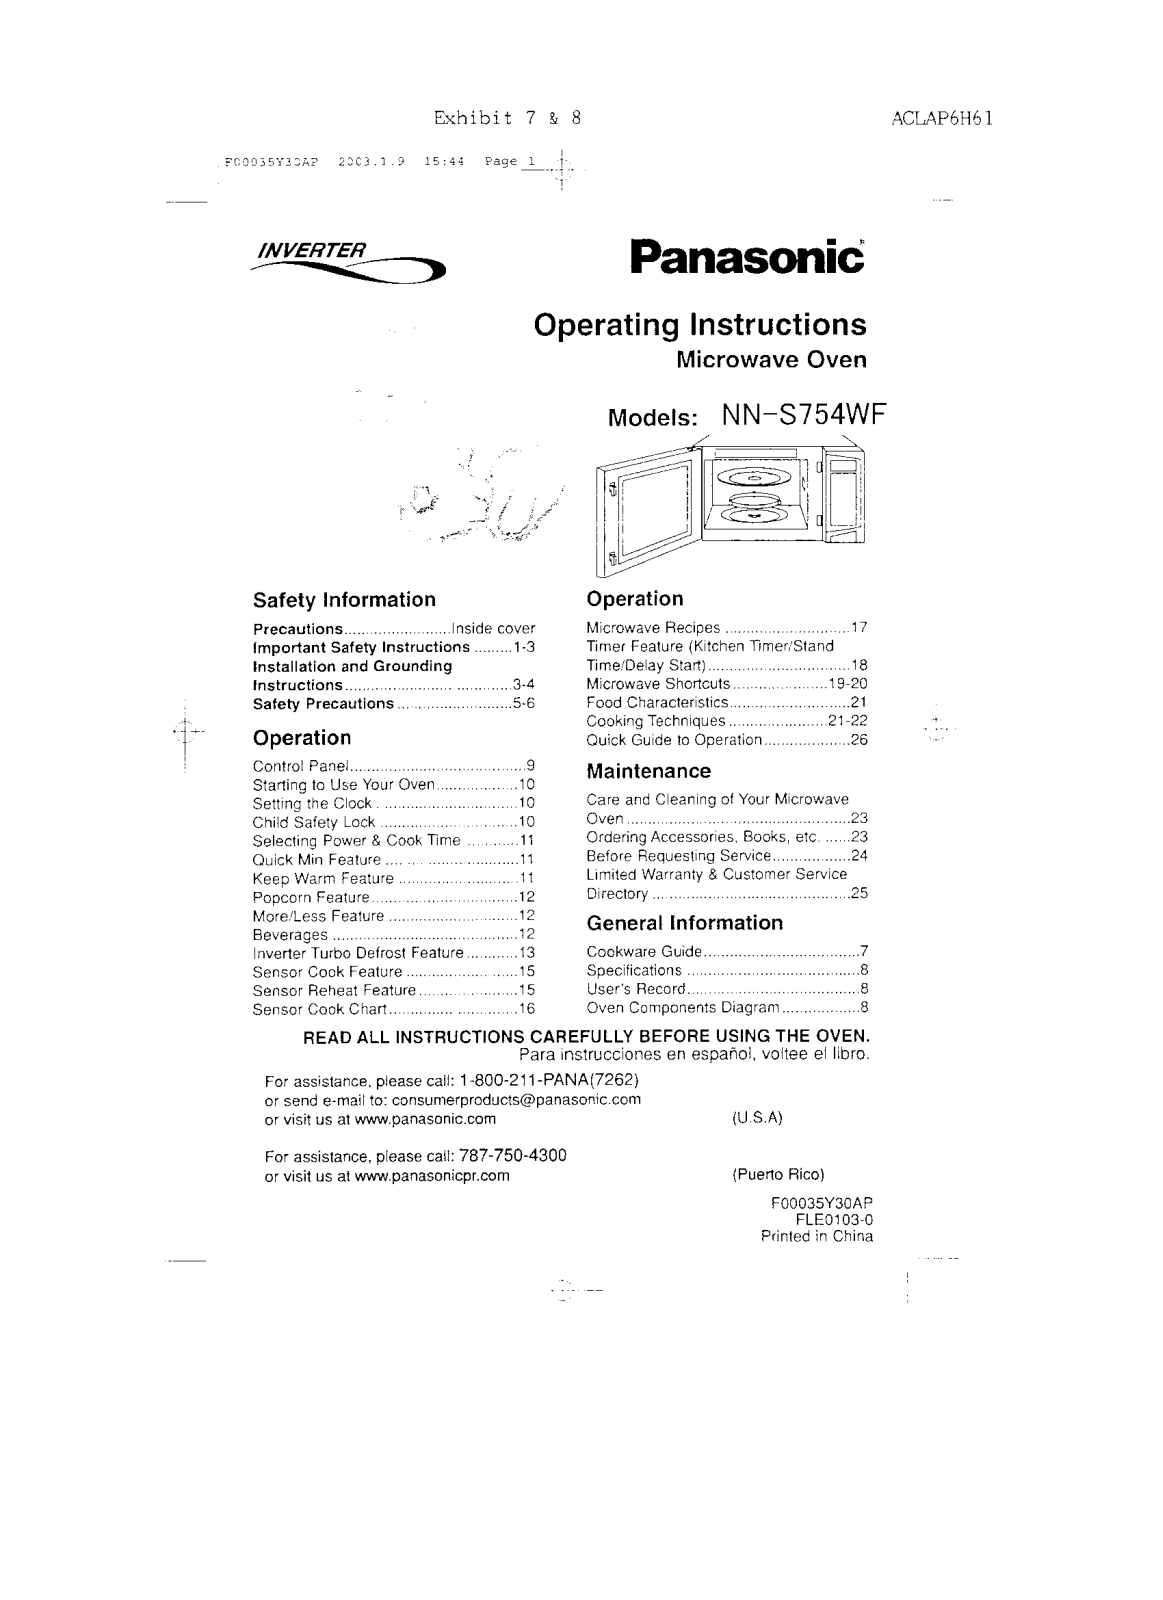 Panasonic AP6H61 Owners Manual